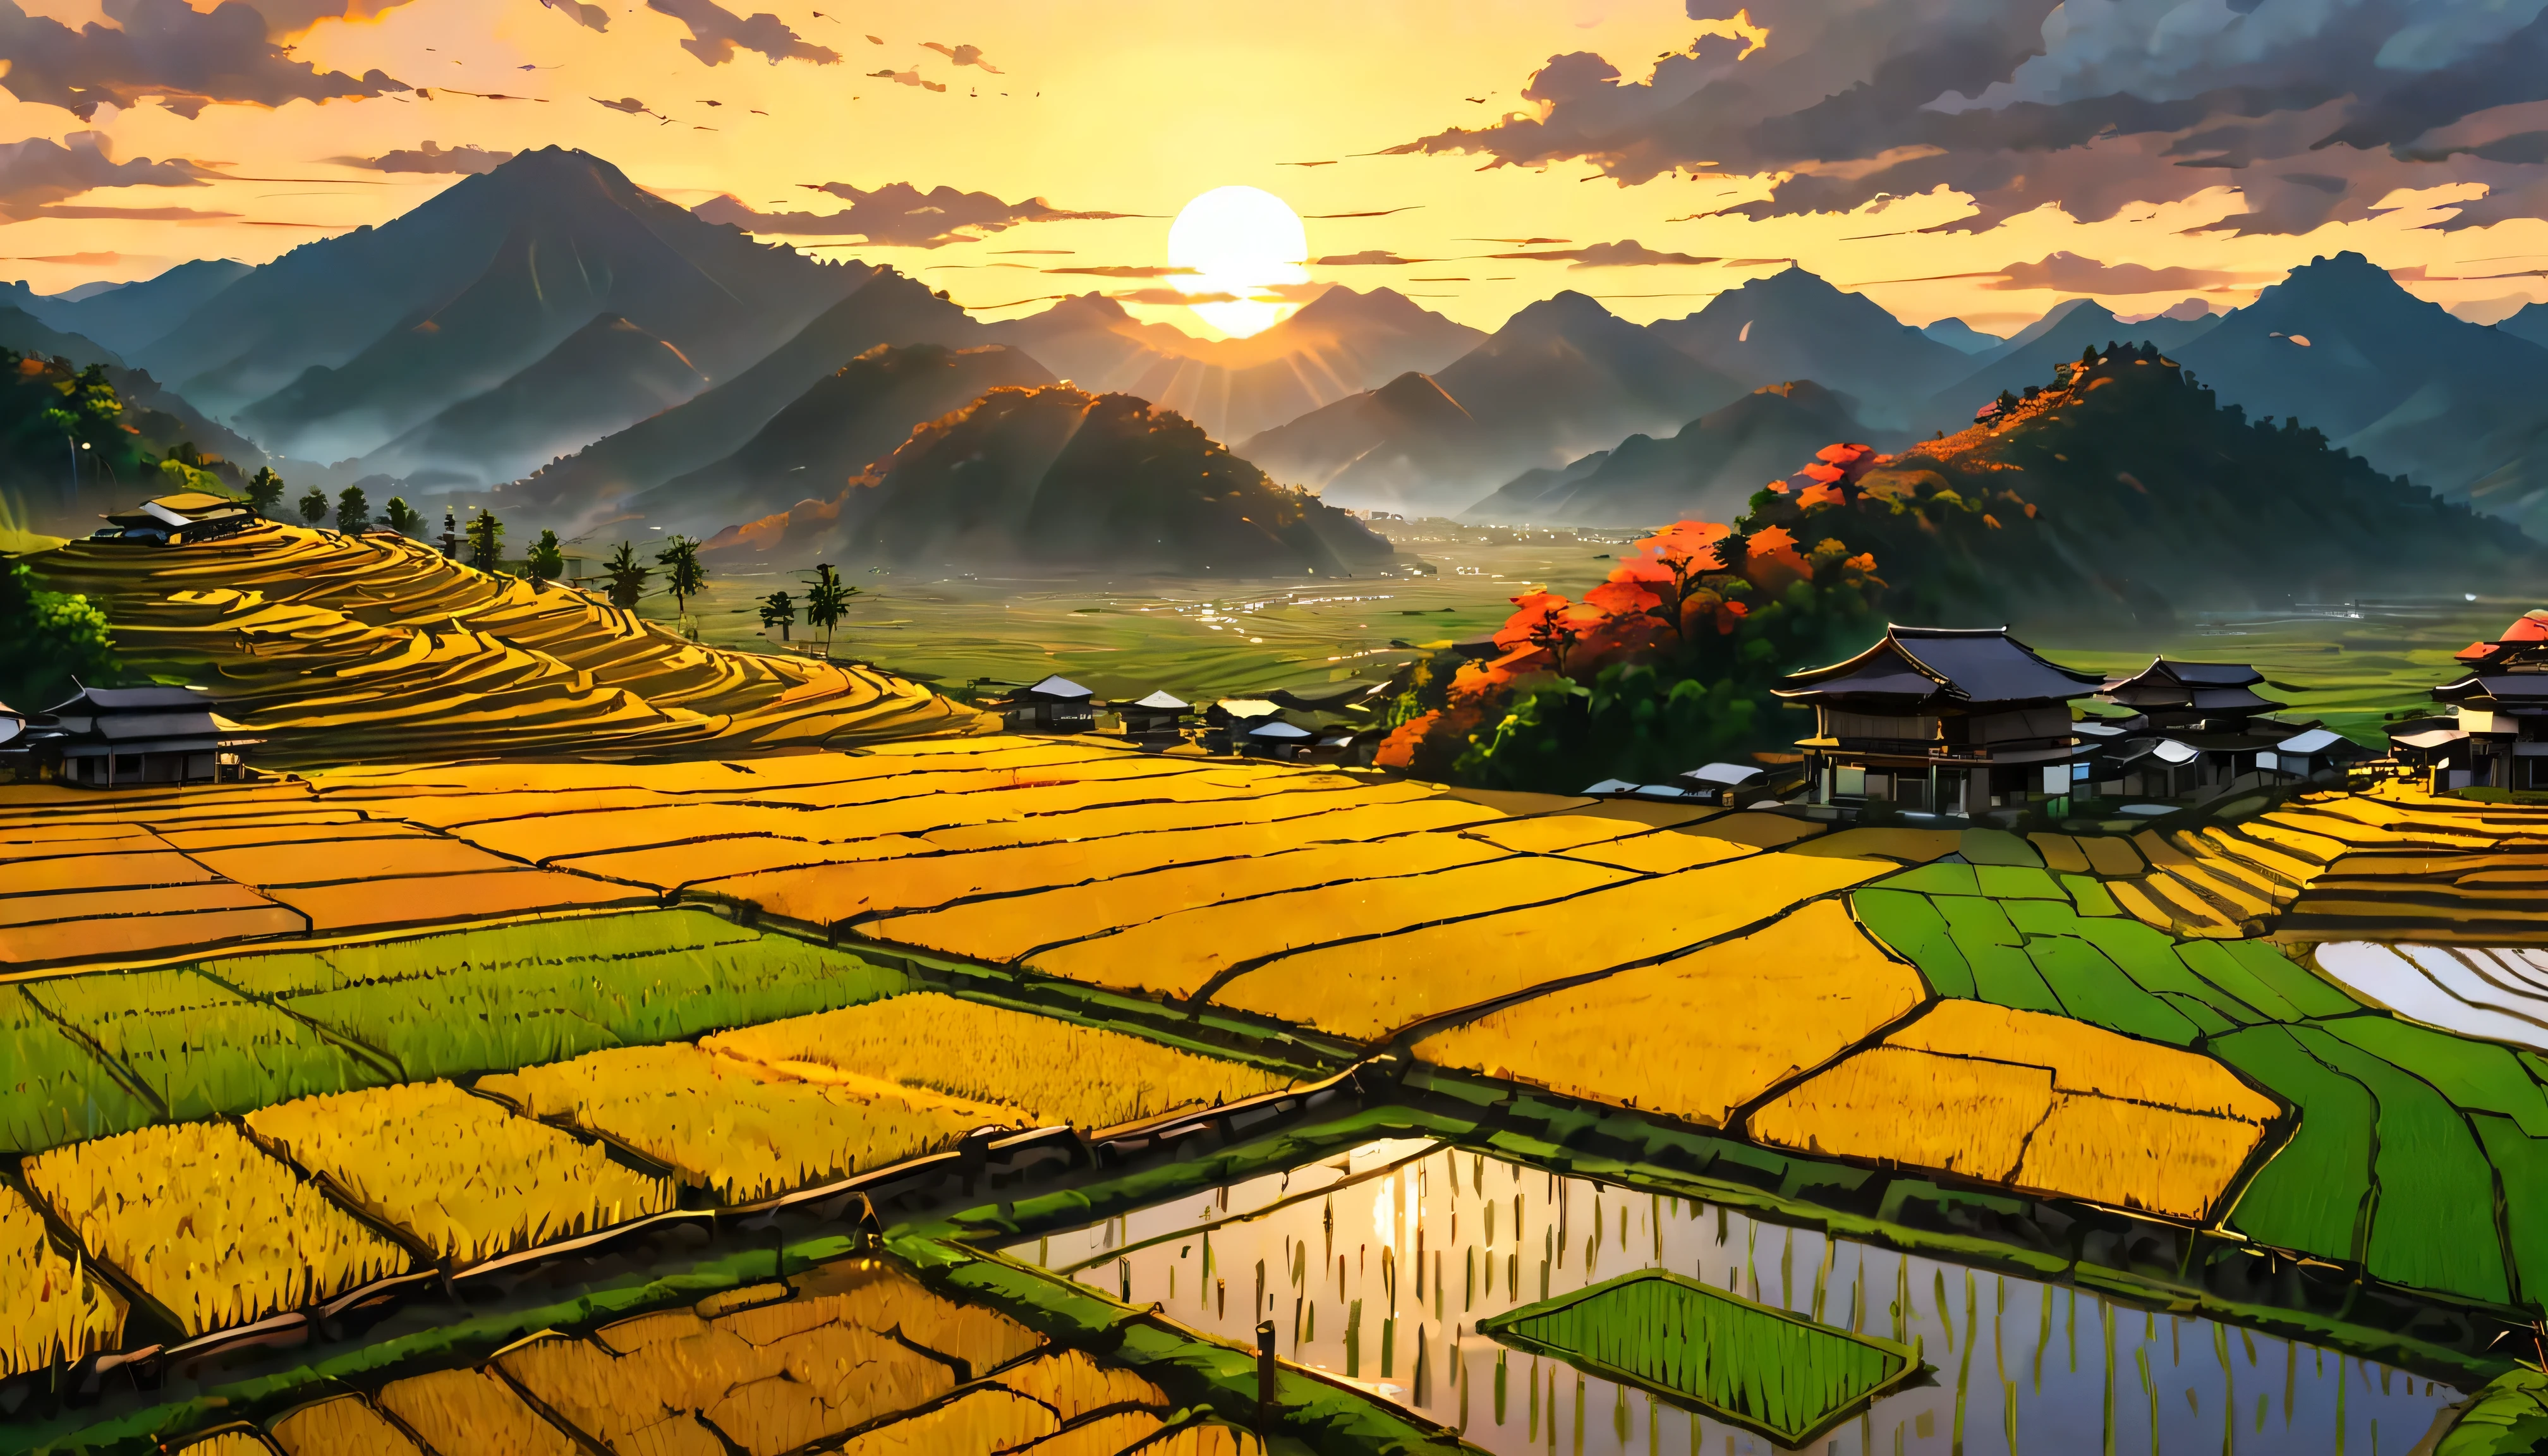 Le paddy doré mûr sur la terrasse de la maison surplombe un champ de rizières avec vue sur la montagne, paysage de rizières fascinant baigné par la lumière du coucher du soleil,((heure d&#39;or):1.2),((Paysage majestueux):1.2),((Ciel coucher de soleil à l&#39;automne):1.1),délicate lumière dorée de l&#39;heure, fonds d&#39;écran incroyables, un cadre magnifique, peinture mate optimiste, Belle œuvre d&#39;art numérique, Scènes belles et détaillées, UHD sous terre, Paysage UHD, Art conceptuel majestueux, magnifique rizière. |(Chef-d&#39;œuvre en résolution maximale de 16K), La meilleure qualité, (qualité de fond d&#39;écran CG Unity 16k très détaillée),(Couleurs douces Art numérique 16k très détaillé),Super détaillé. | image parfaite,16k UE5,peinture officielle, superfin, profondeur de champ, pas de contraste, Mise au point nette et nette, Professionnel, Pas de flou. | (((Plus de détails))).